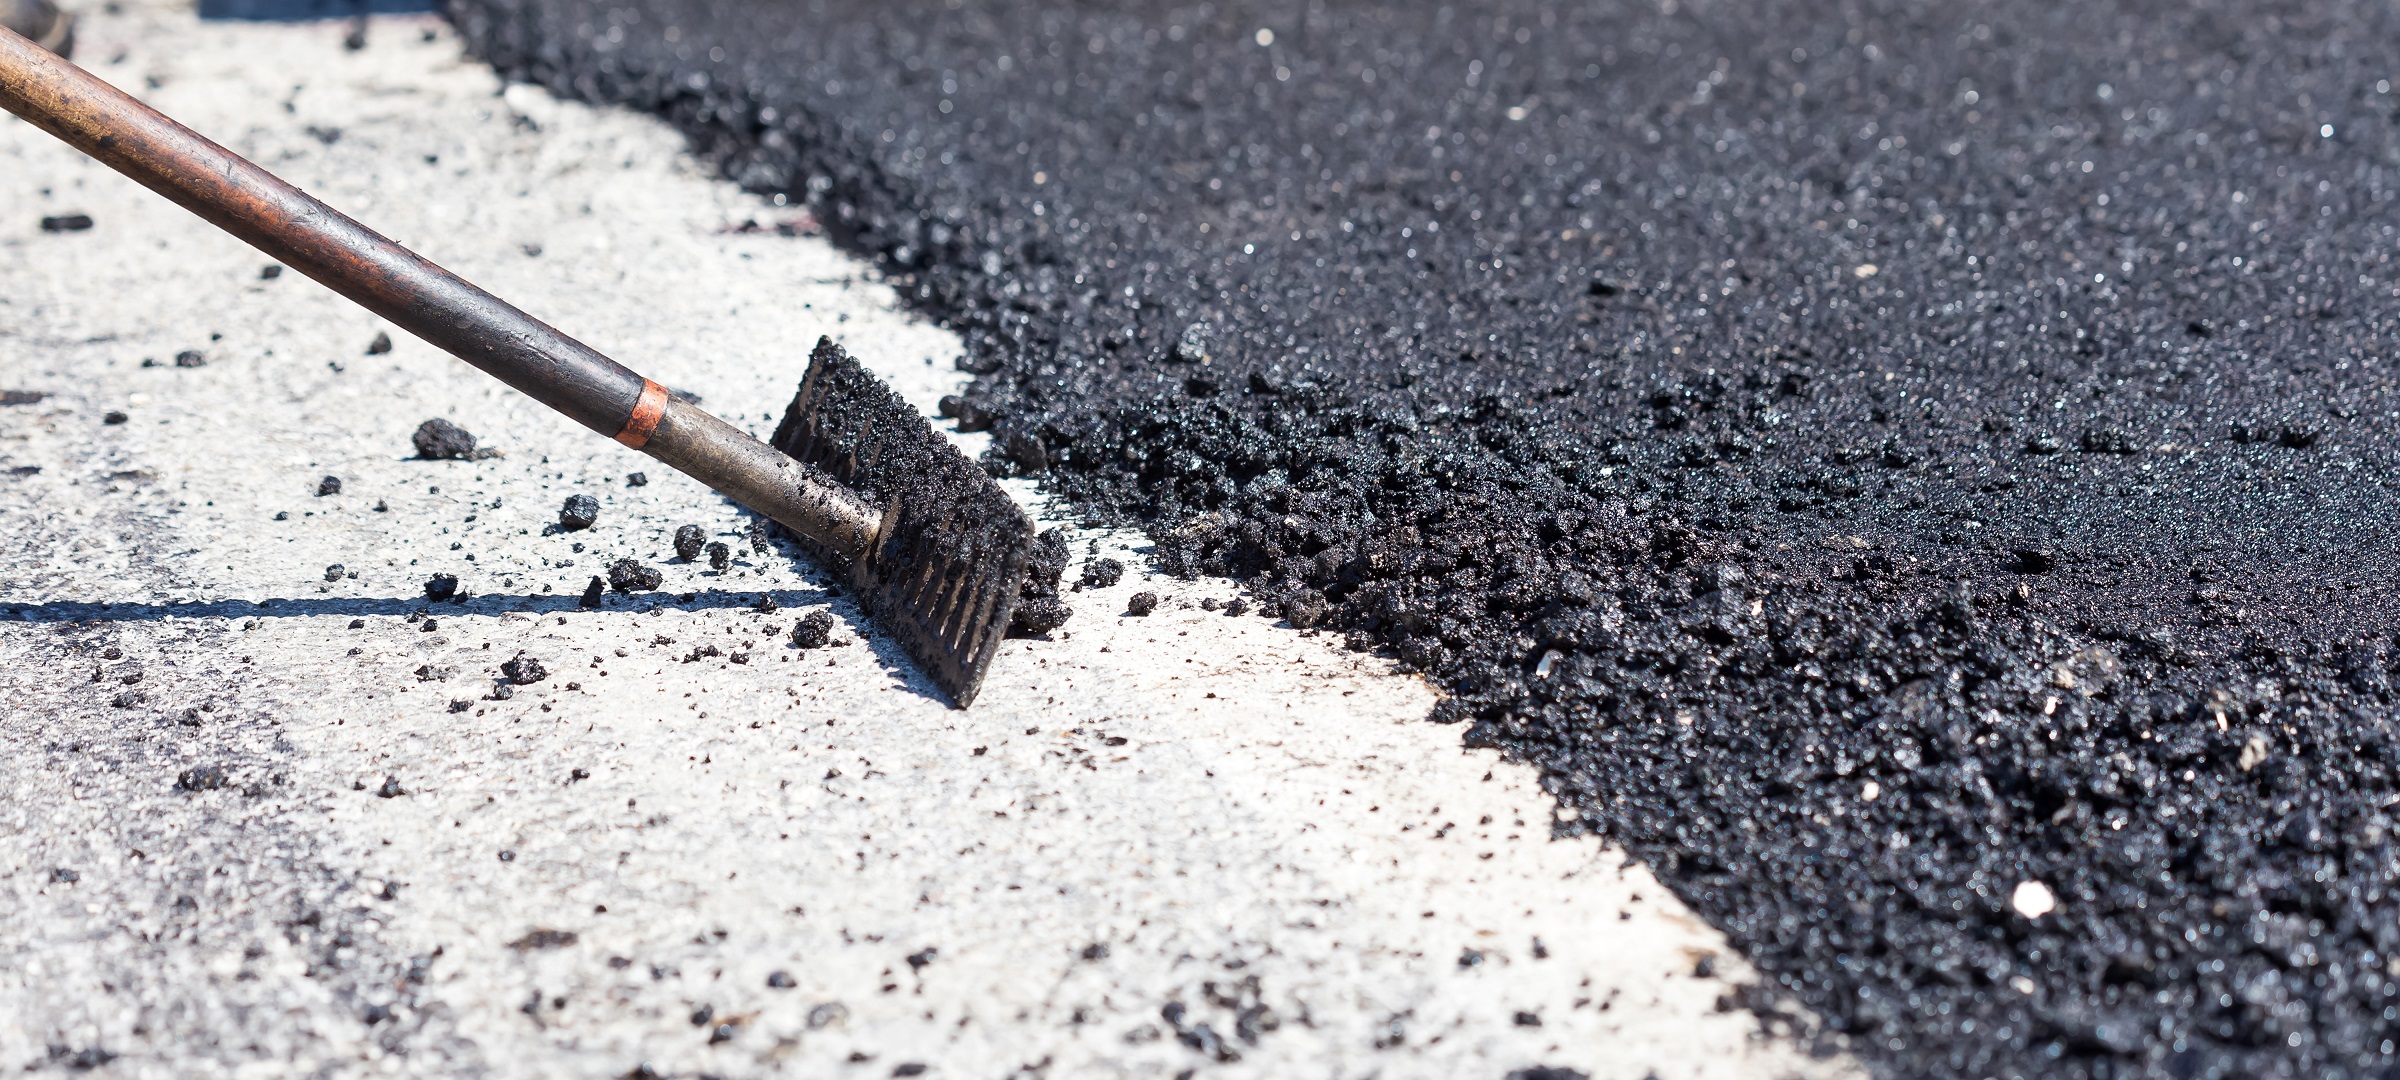 Workers making asphalt with rakes